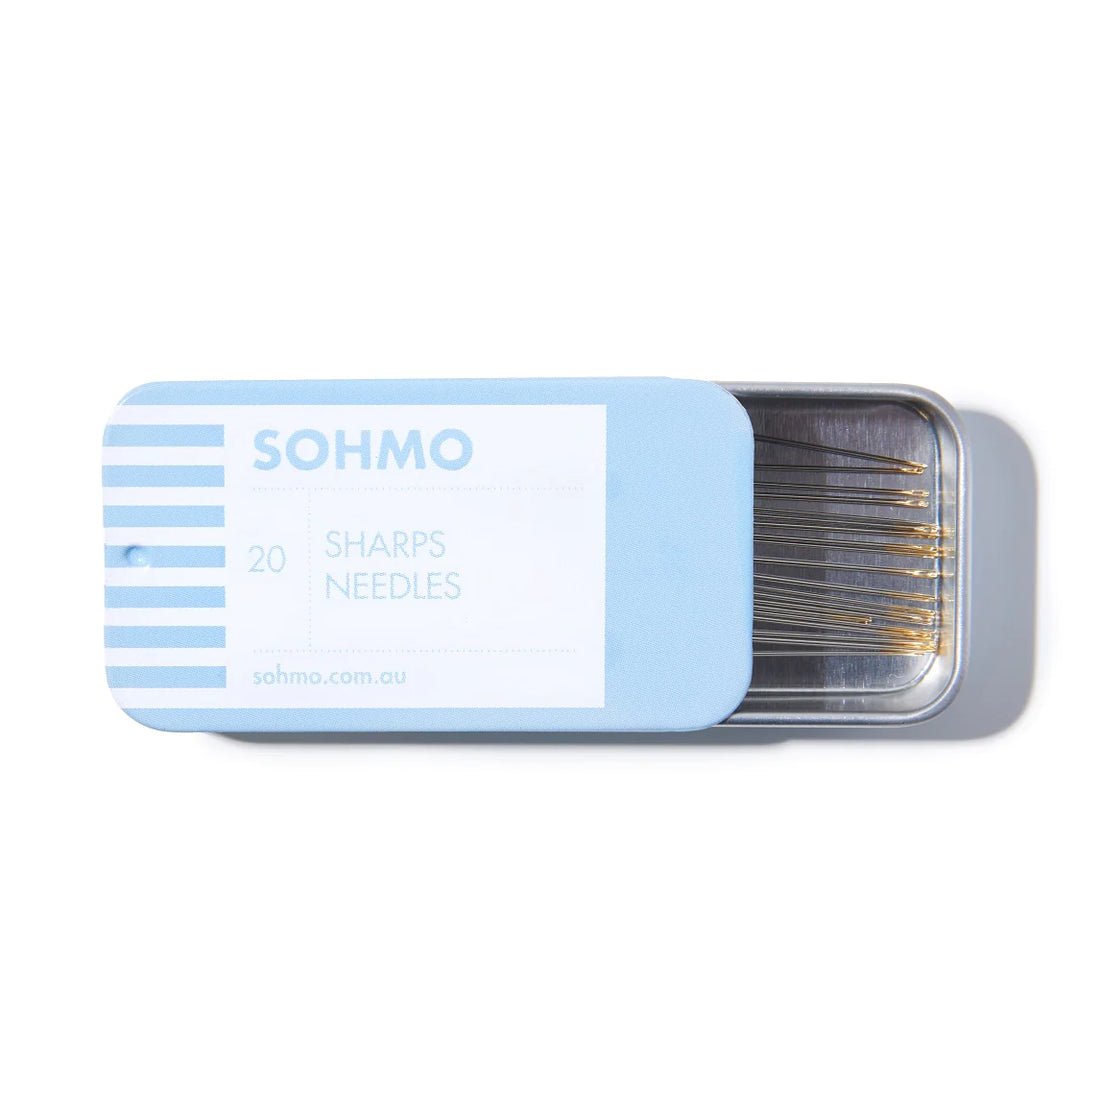 SOHMO Sharps Needles